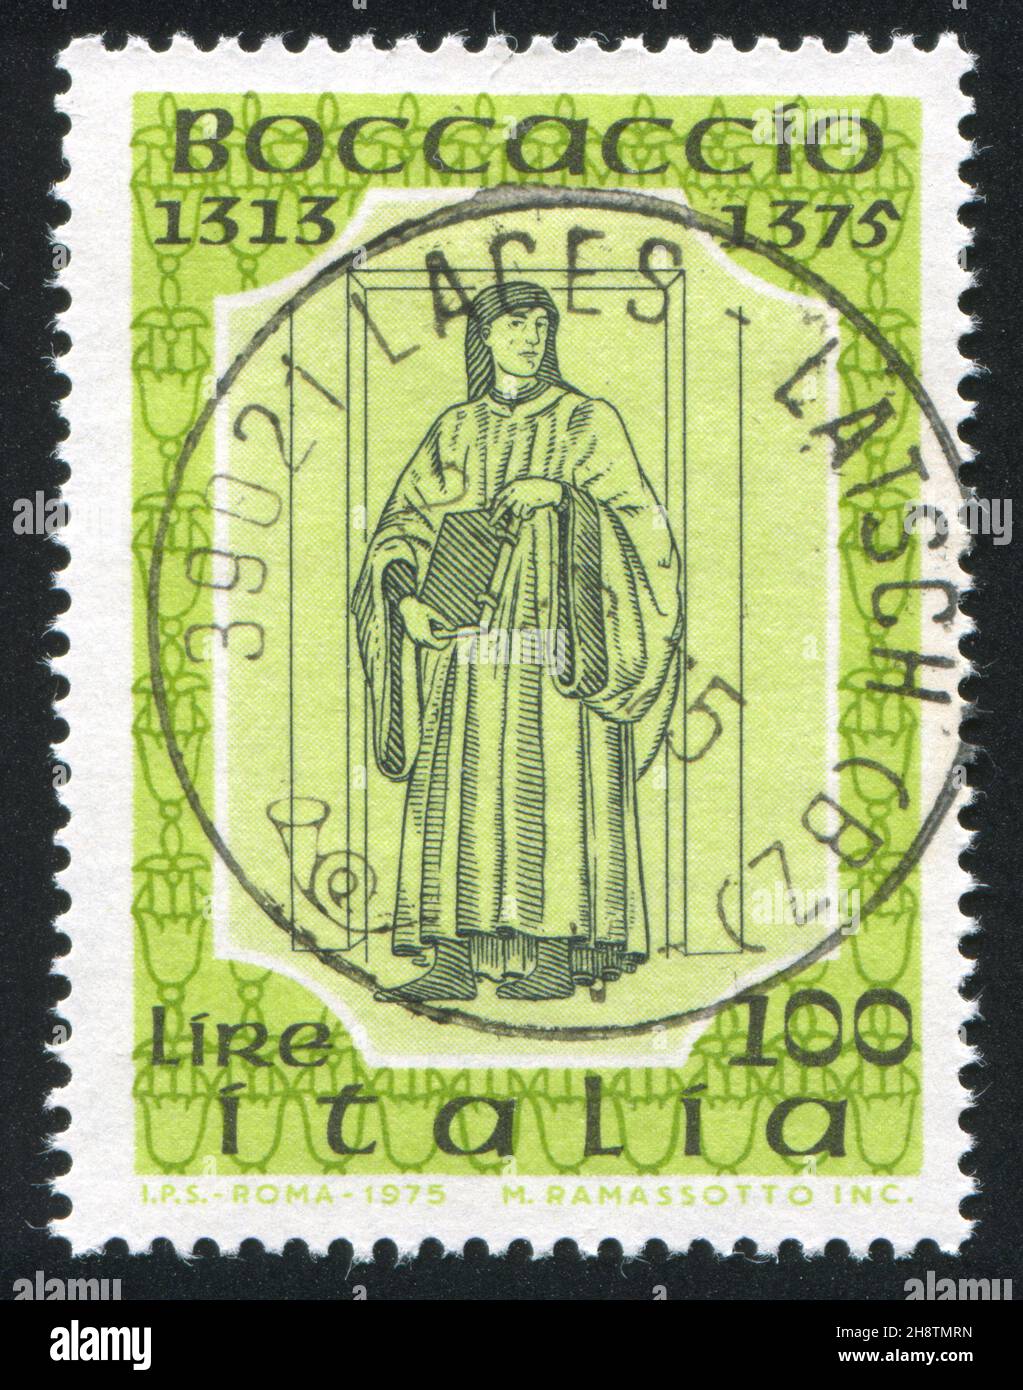 ITALY - CIRCA 1975: stamp printed by Italy, shows Giovanni Boccaccio by Andrea del Castagno, circa 1975 Stock Photo